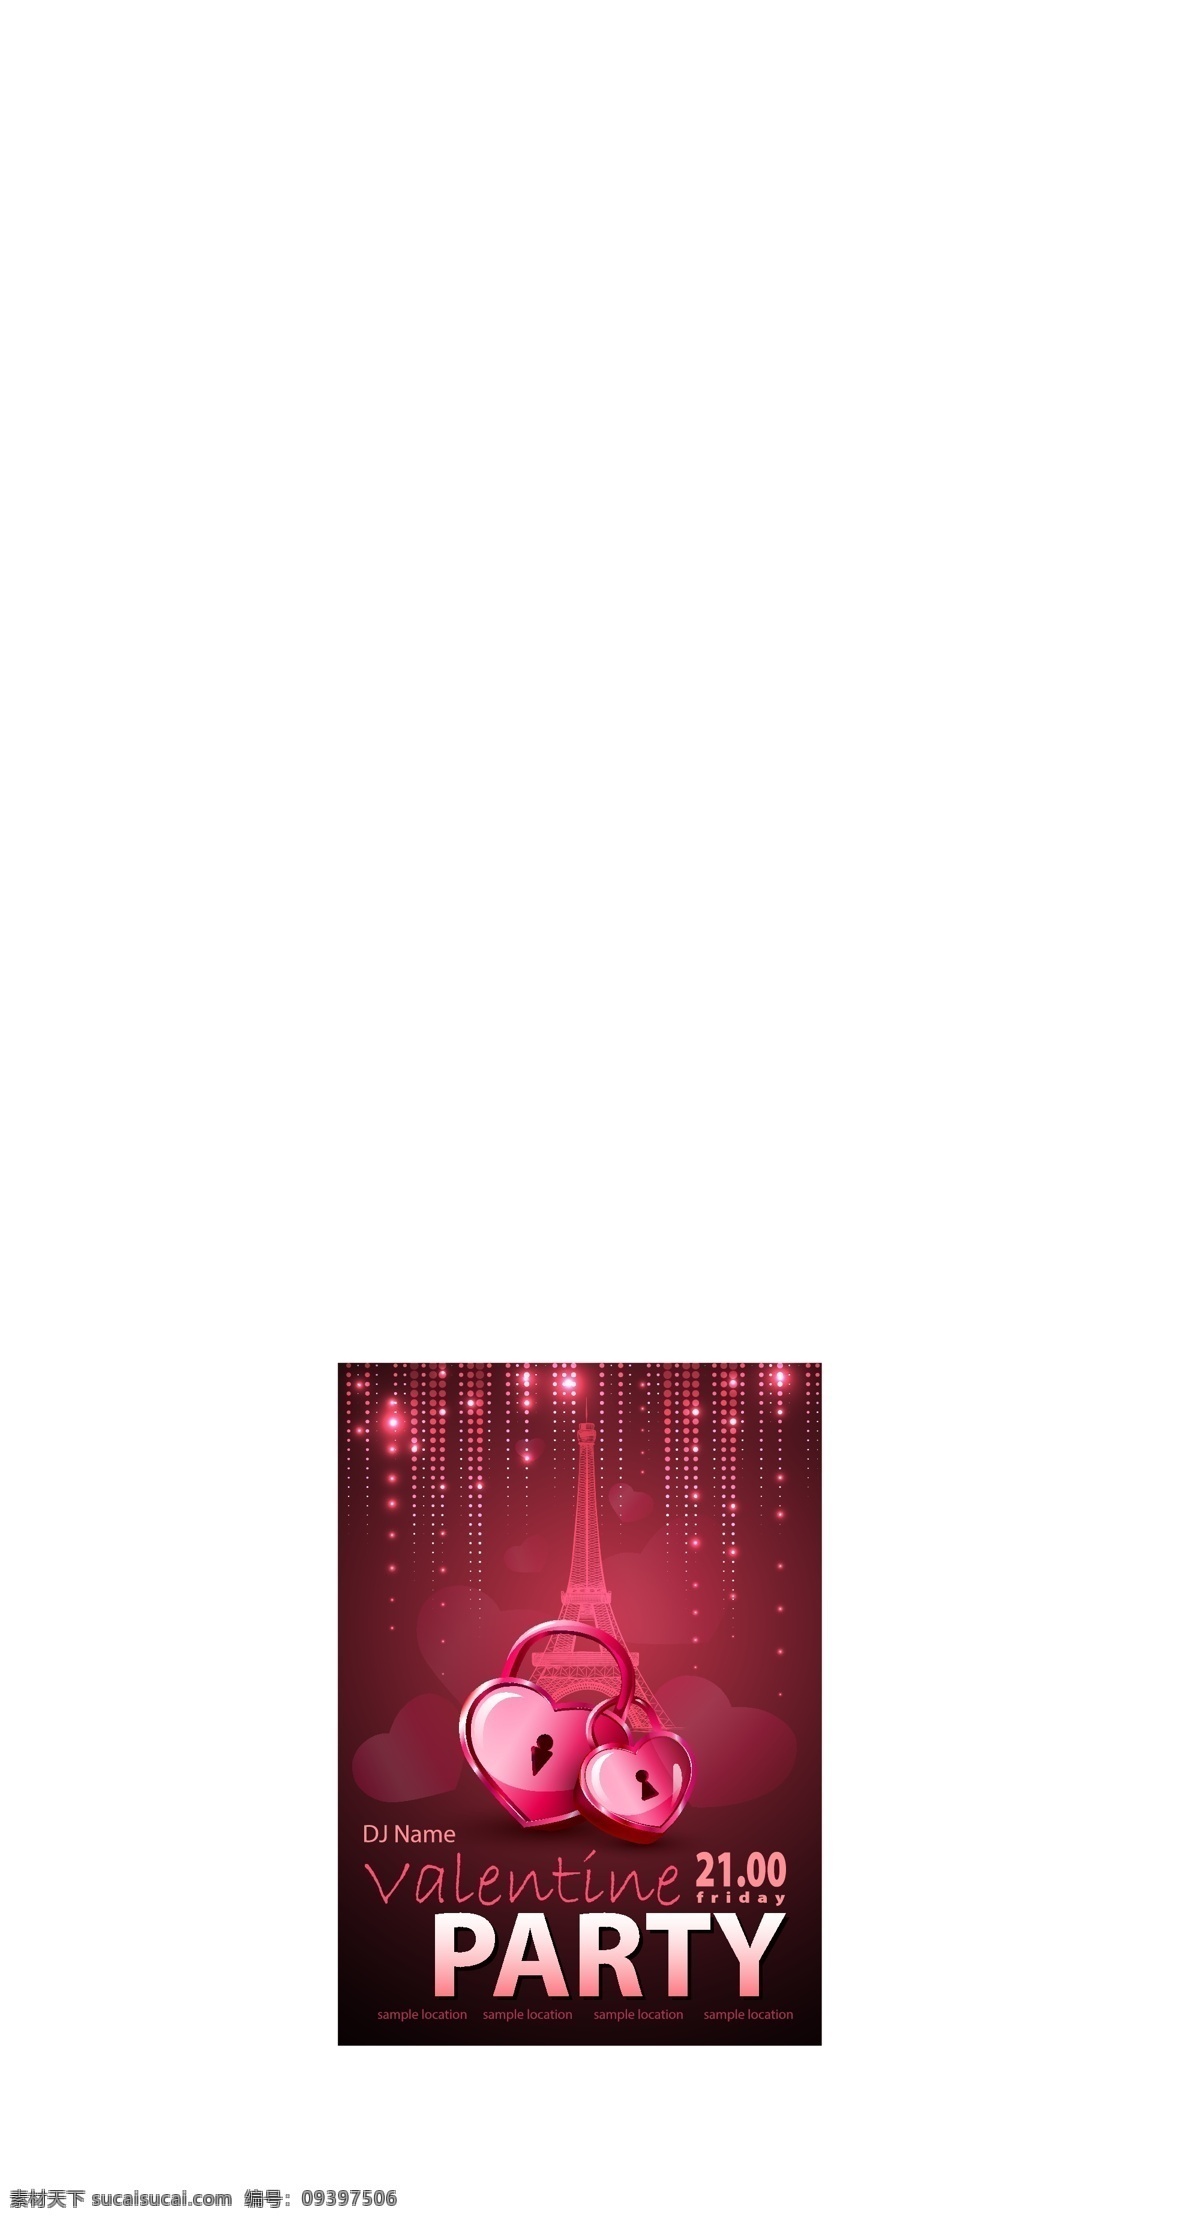 情人节 派对 矢量 节日海报 浪漫海报 模板 派对海报 设计稿 素材元素 爱心锁 粉色纹样 浪漫光点 源文件 矢量图